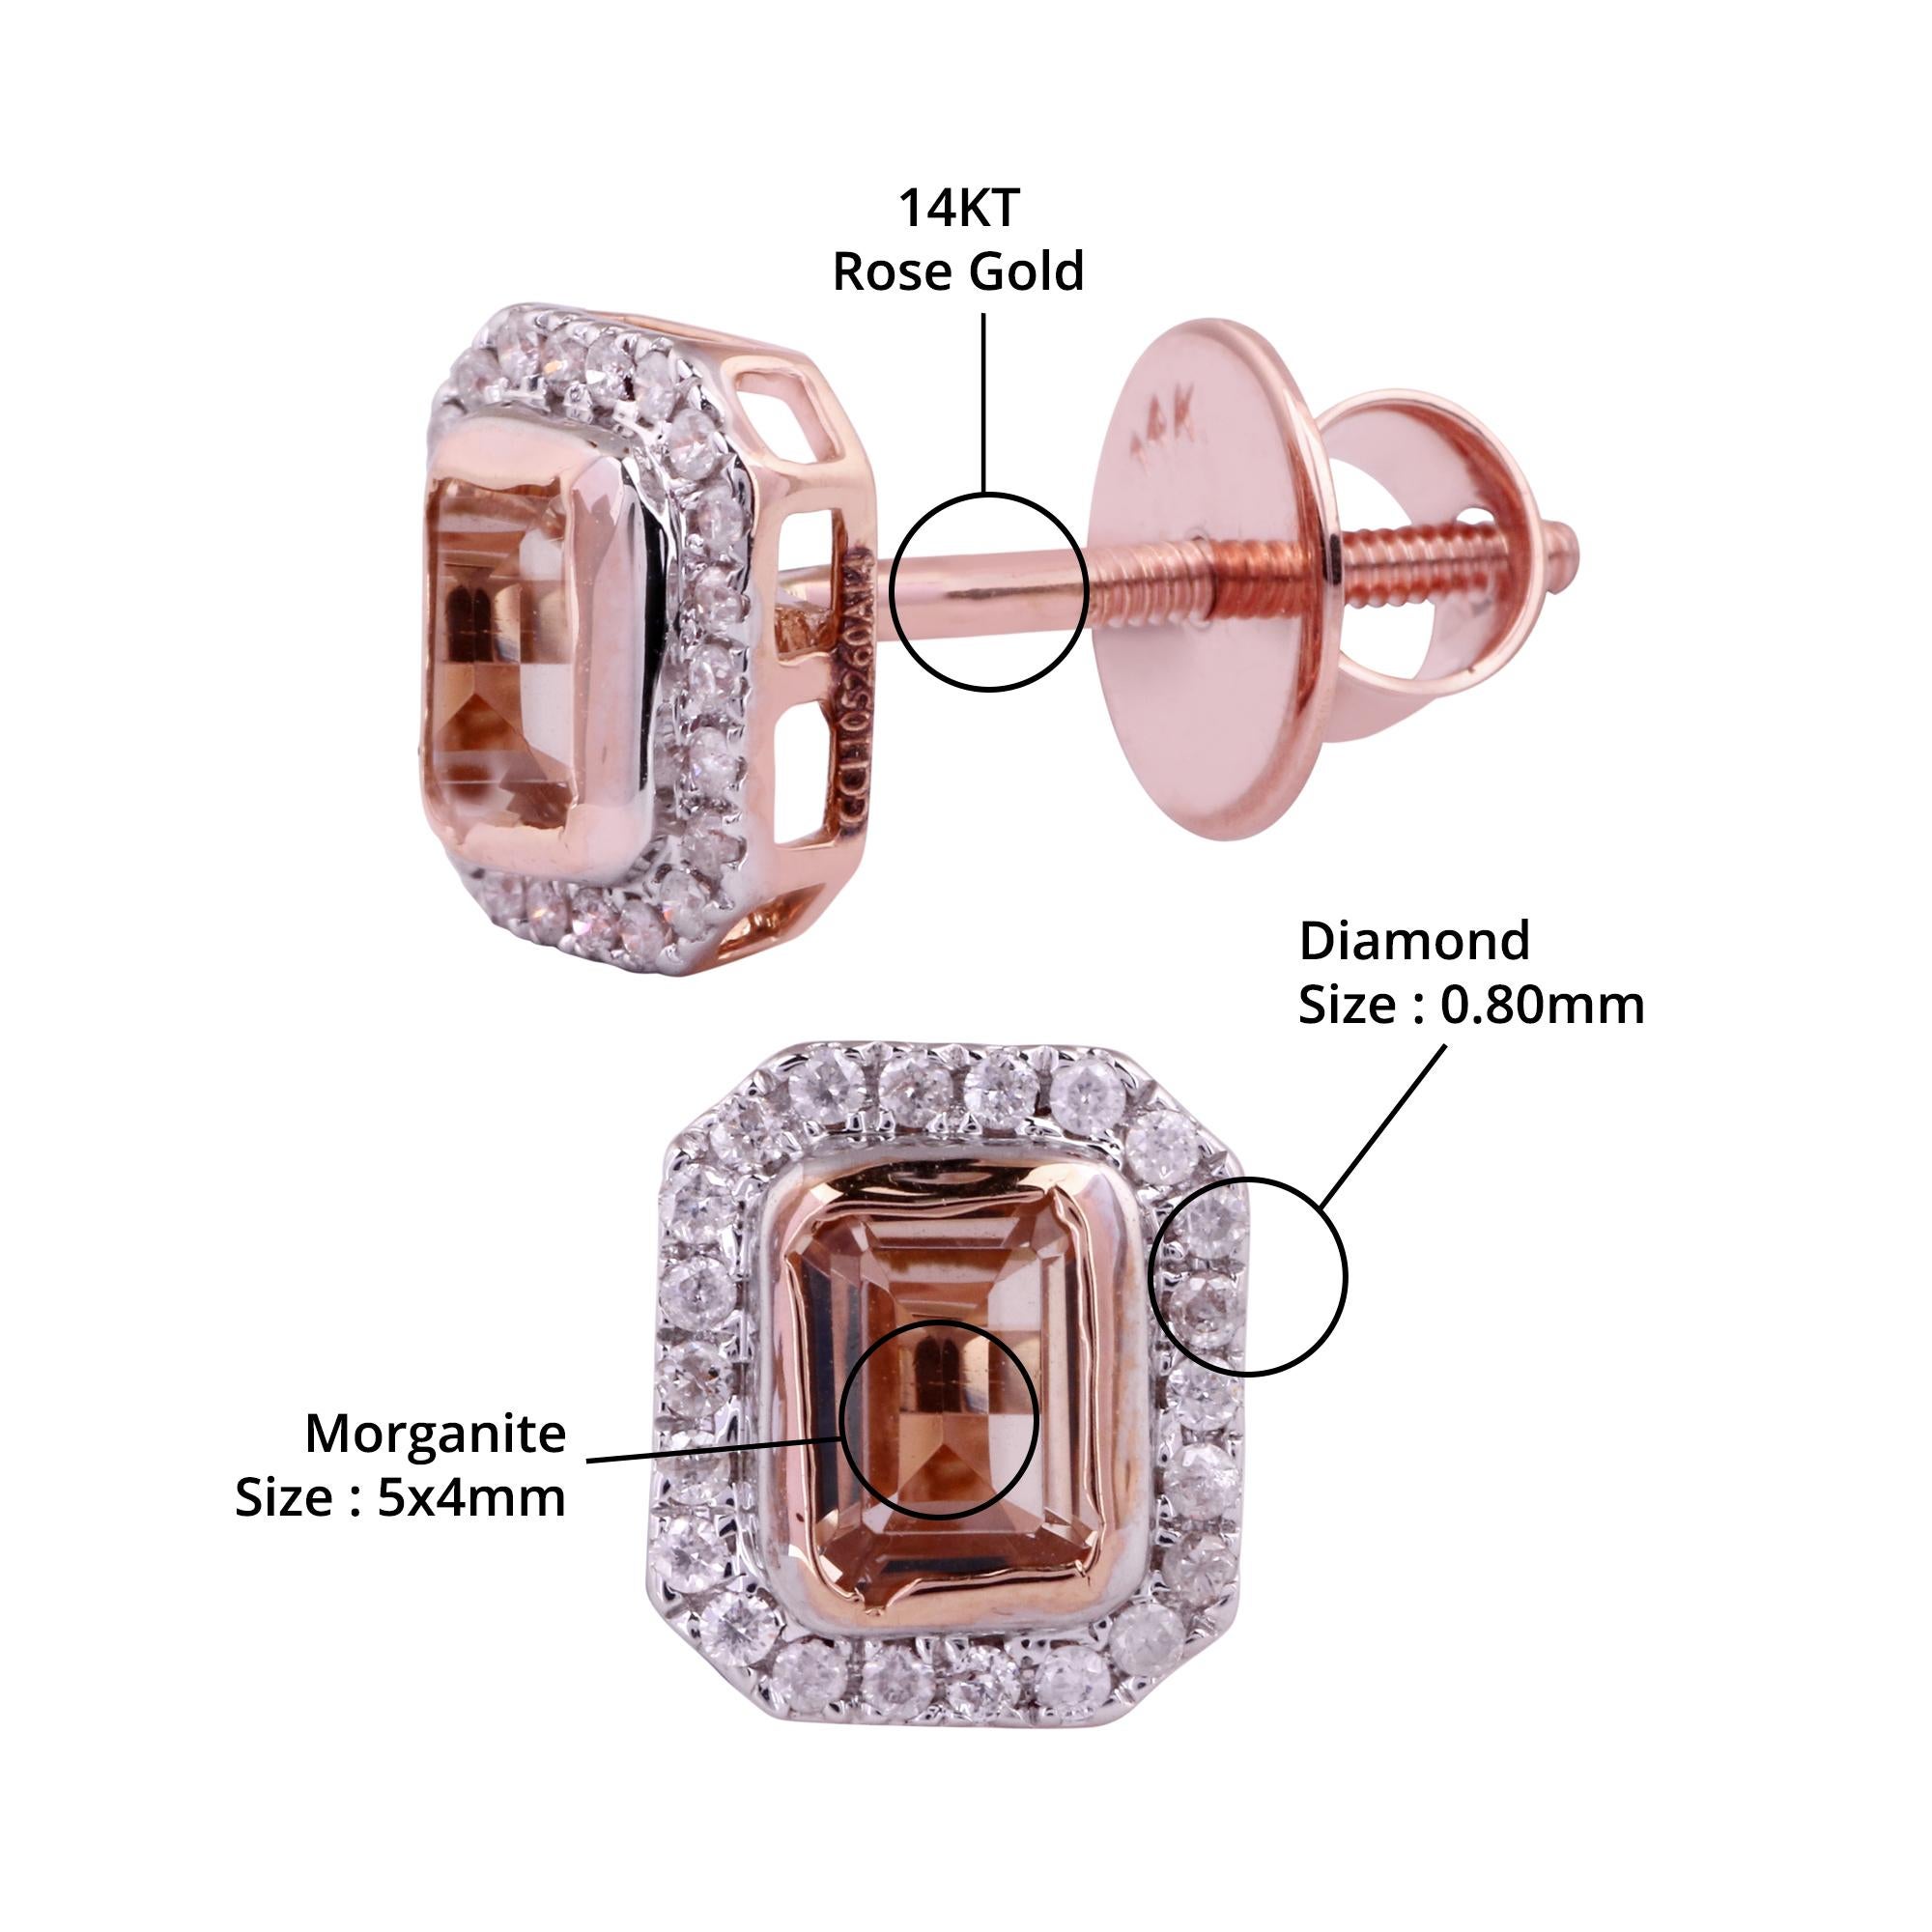 Einzelheiten zum Artikel:-

✦ SKU:- JER00728RRR

✦ Material :- Gold

✦ Metallreinheit : 14K Rose Gold 

✦ Edelstein-Spezifikation:-
✧ Klarer Diamant (l1/HI) Rund - 0,80 mm - 44 Stück
✧ Natürlicher Morganit - 5x4mm - 2 Stück


✦ Ungefähr. Diamant